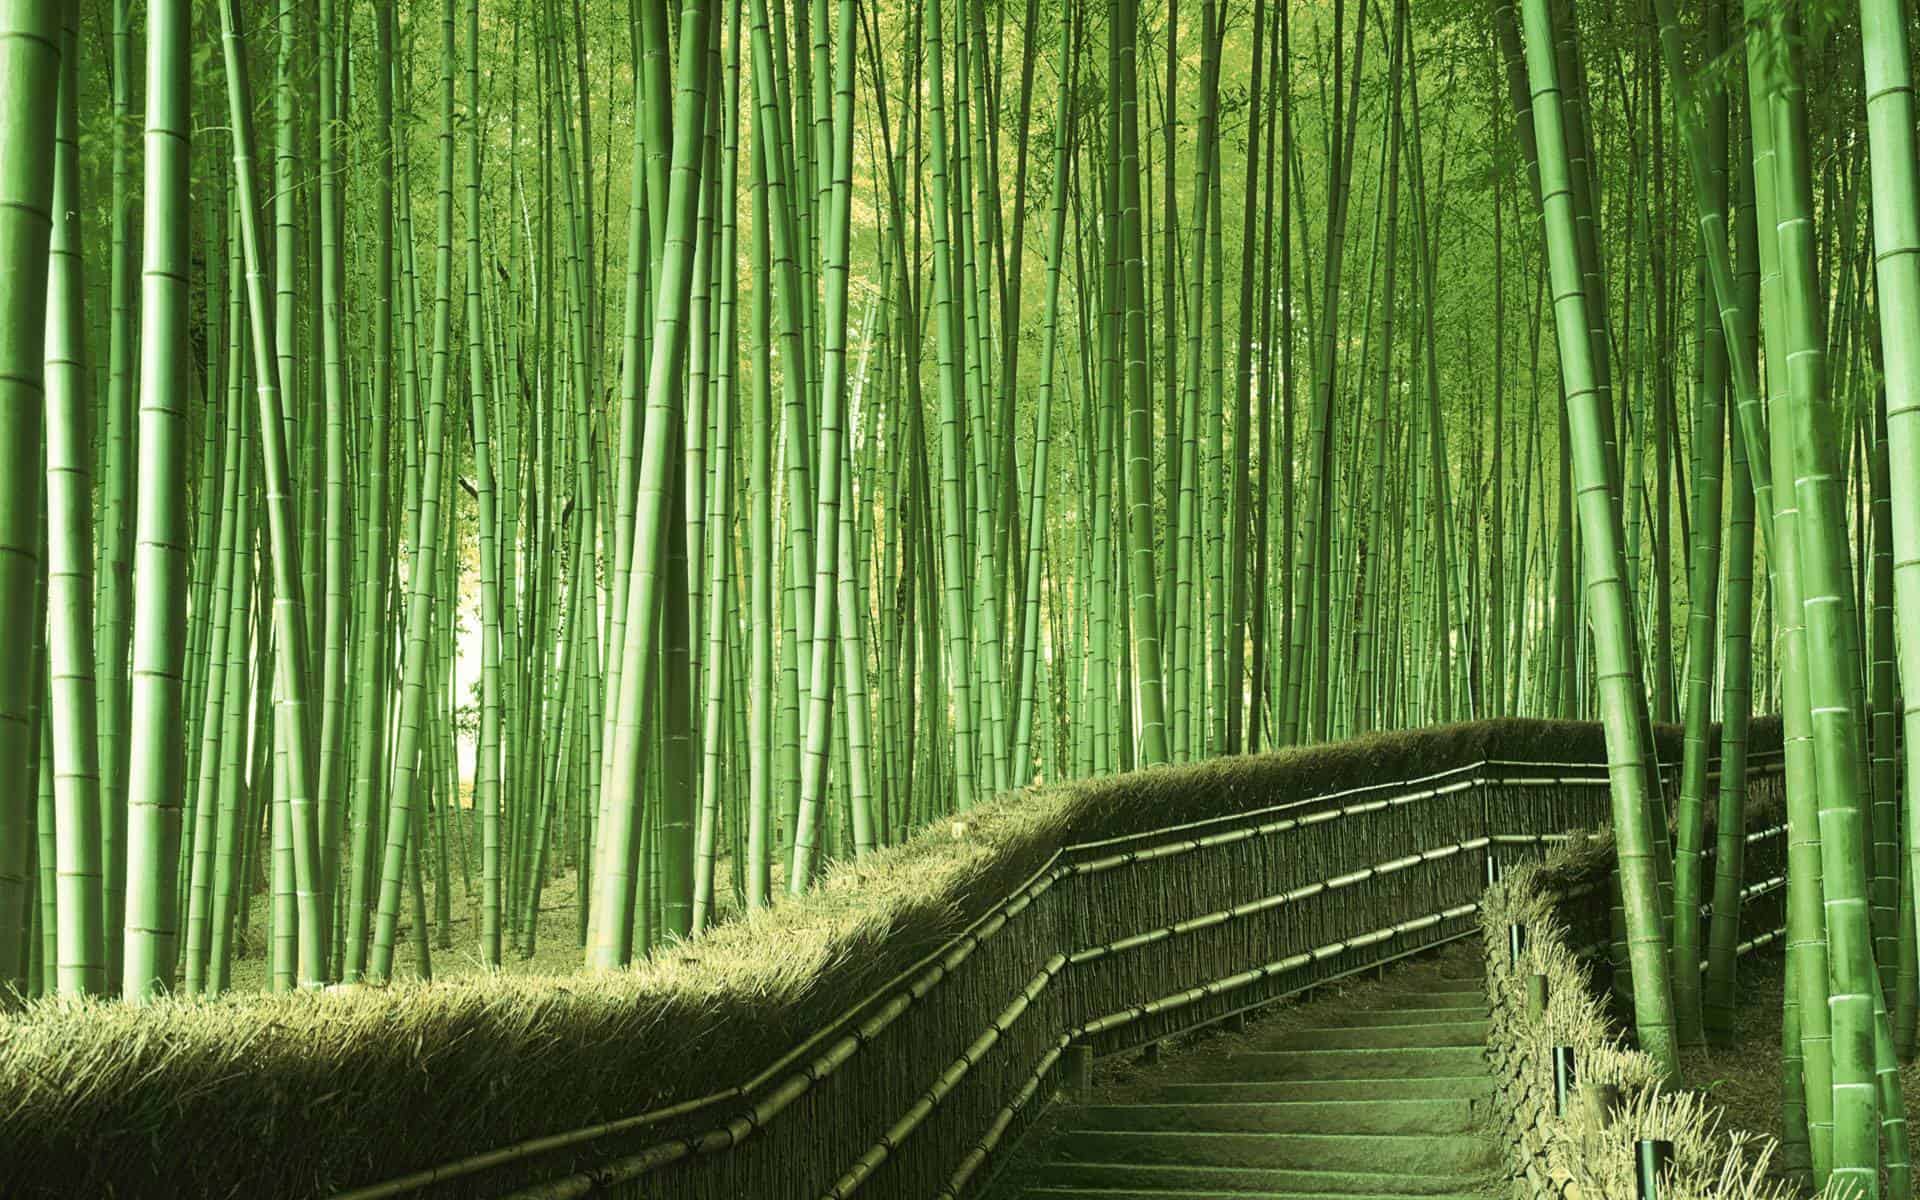 Bamboo Path, Kyoto, Japan